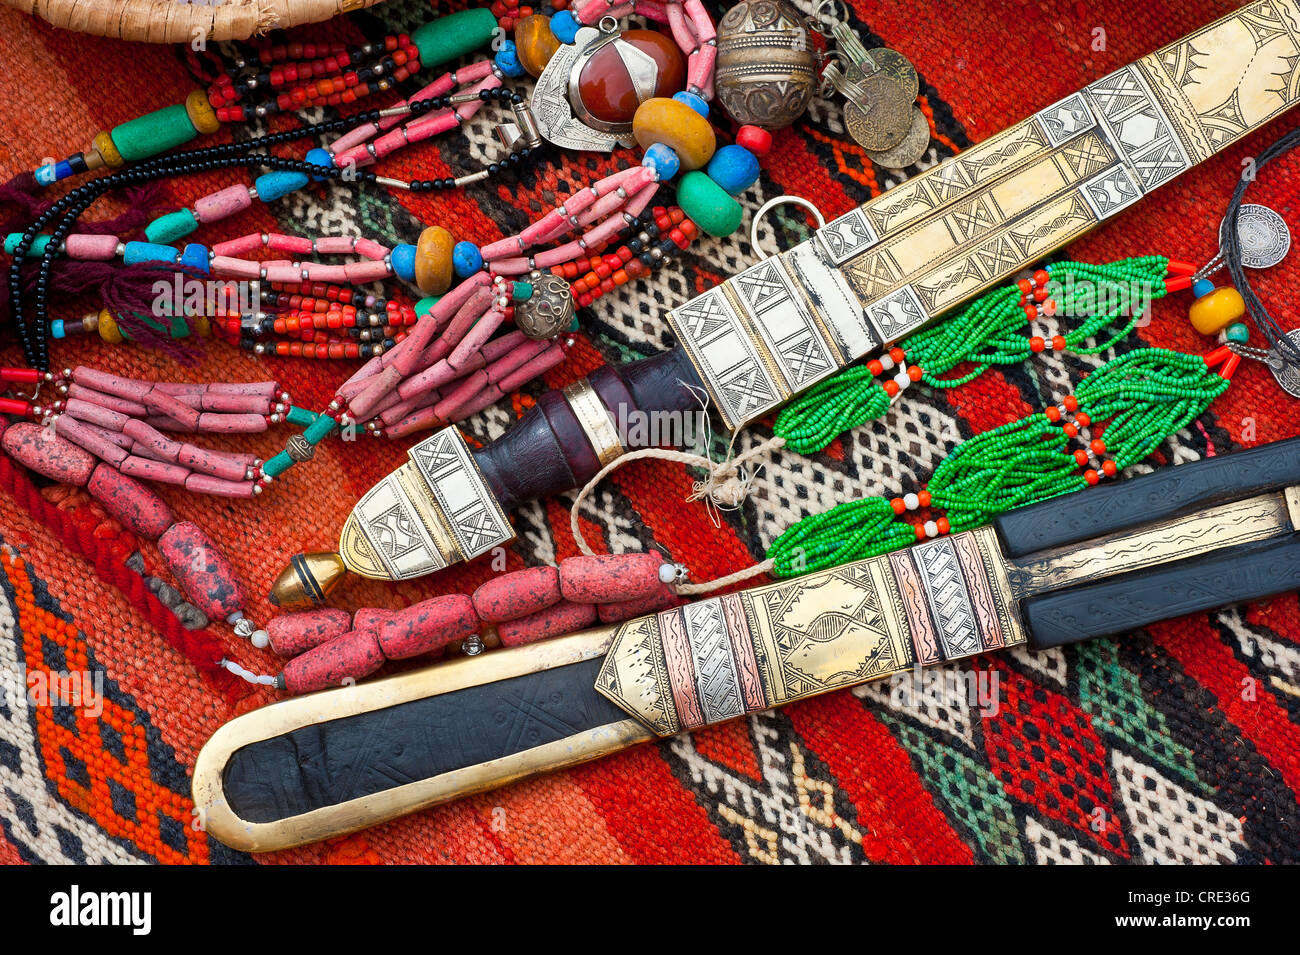 Orientalischer Schmuck und reich verzierten Touareg Messer verteilen sich auf einem Teppich in einem Souk oder Basar, Marokko, Afrika Stockfoto